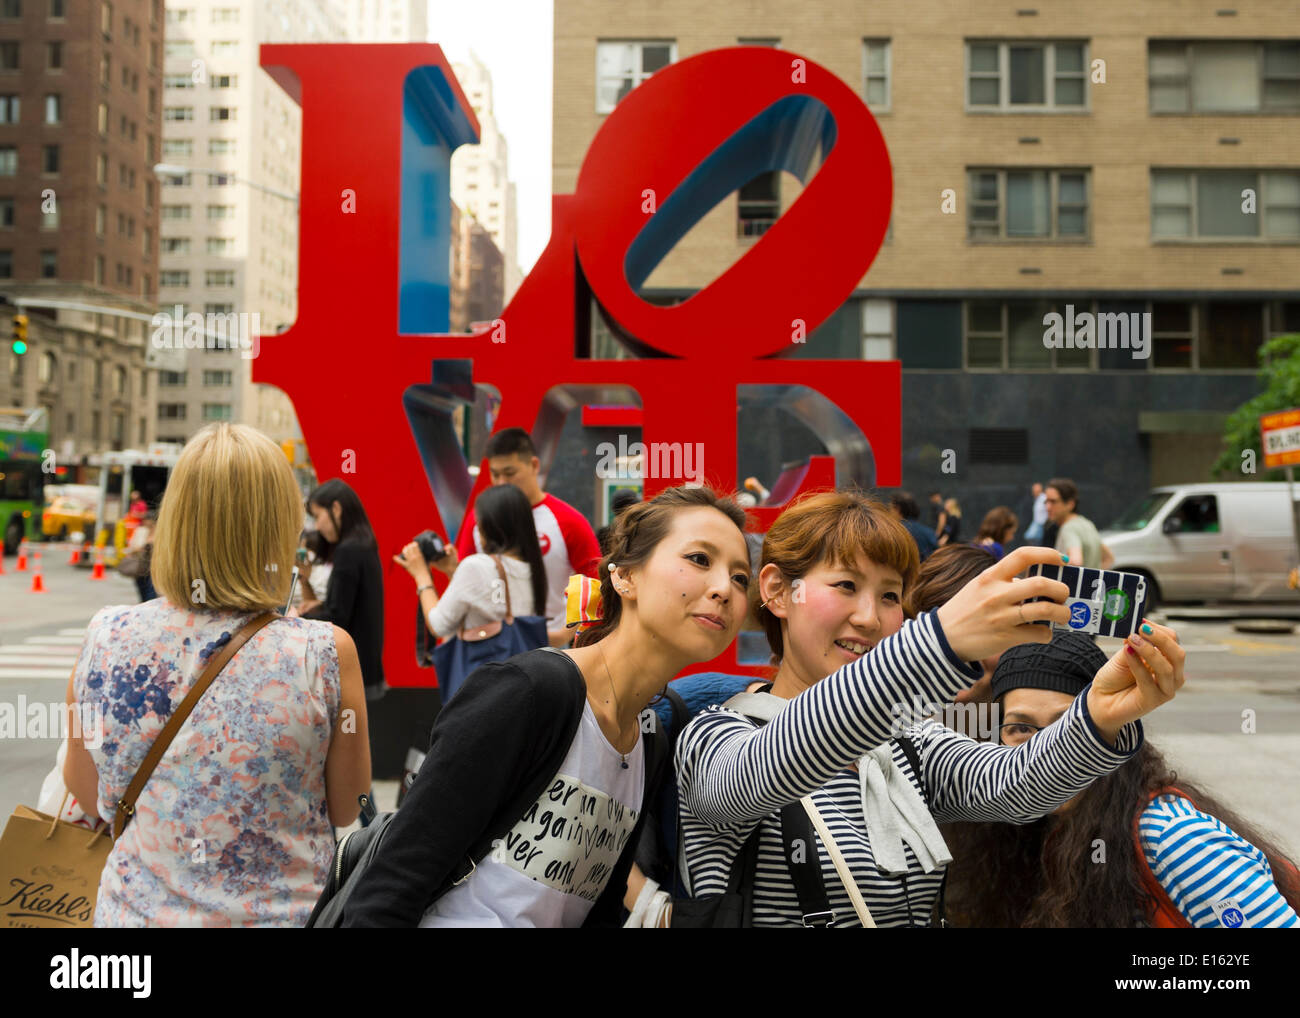 Manhattan, New York, États-Unis - 21 mai 2014 - Plusieurs amies prendre des autoportraits photos avec un téléphone cellulaire, avec le célèbre sculpture LOVE de Robert Indiana sur la 6e Avenue, dans l'arrière-plan, au cours d'une agréable journée de printemps à Manhattan. Banque D'Images